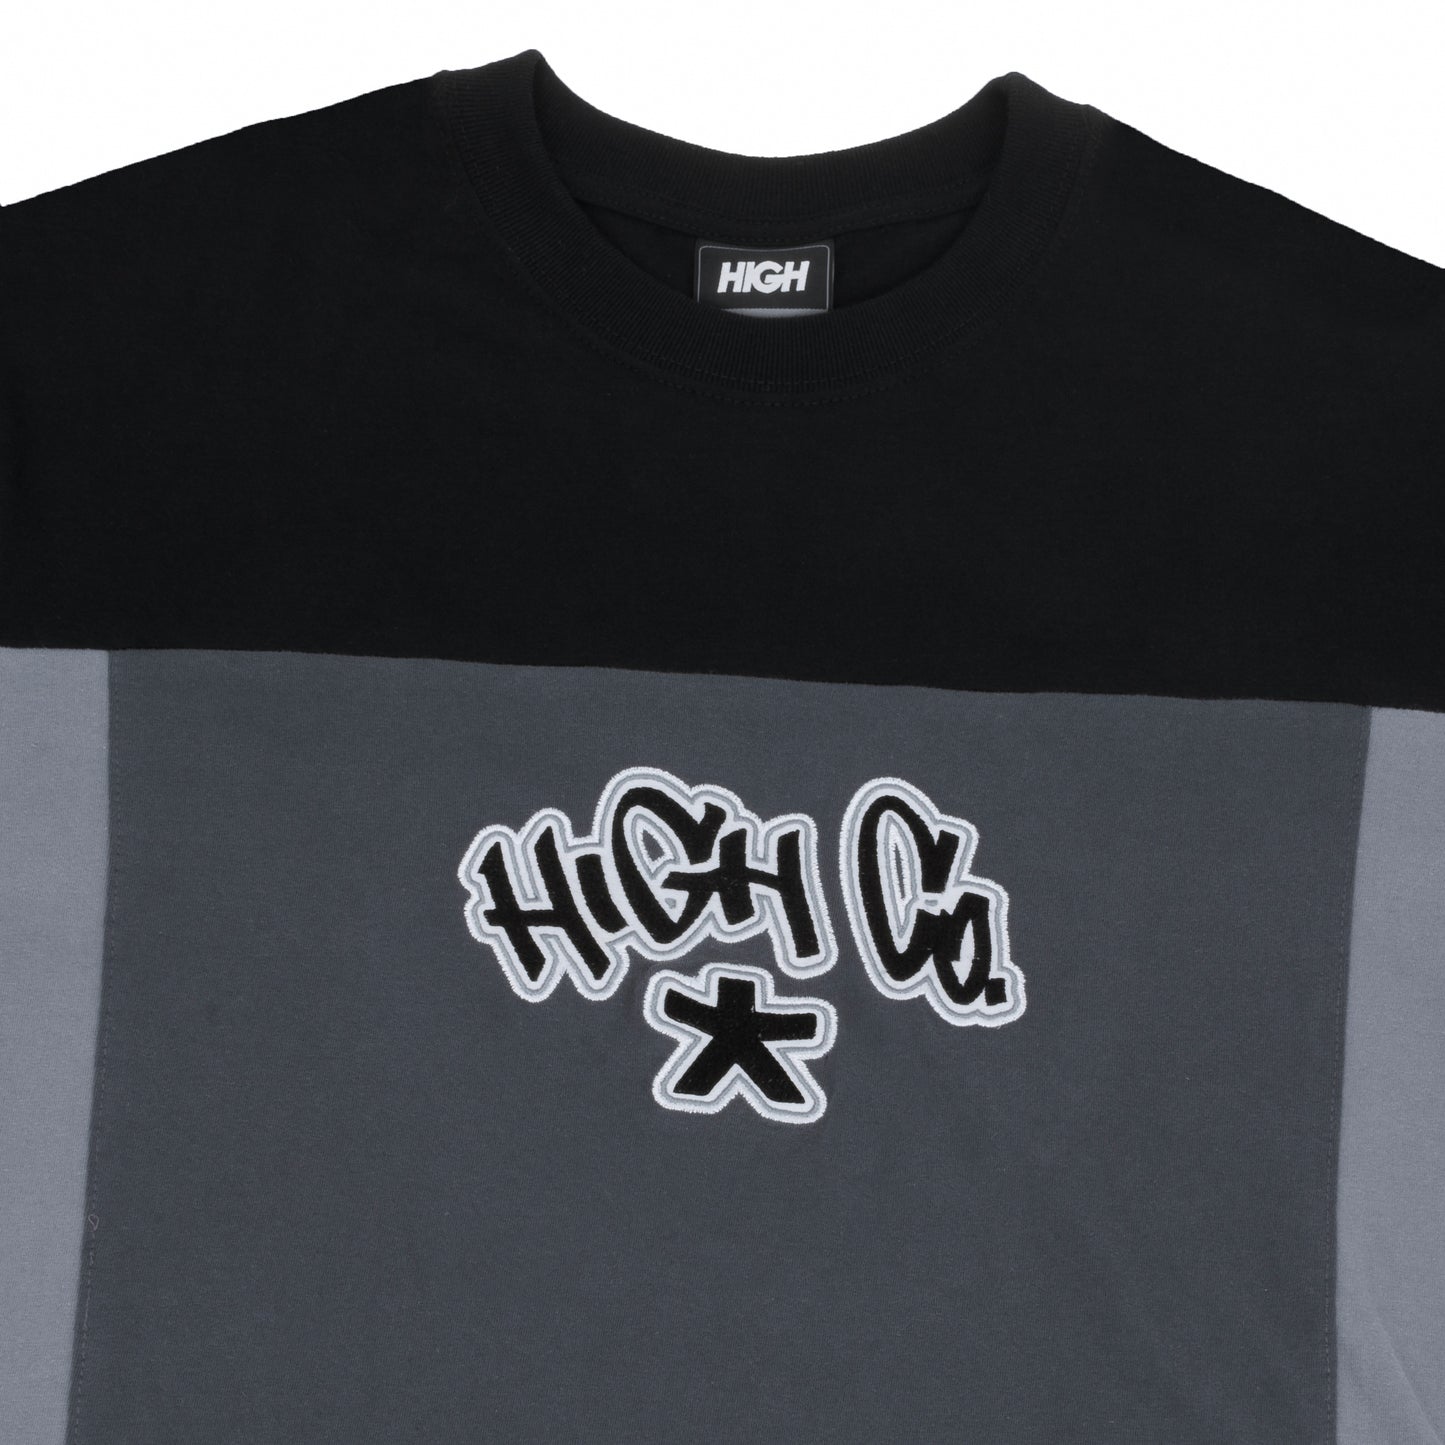 HIGH - Camiseta Solid Black